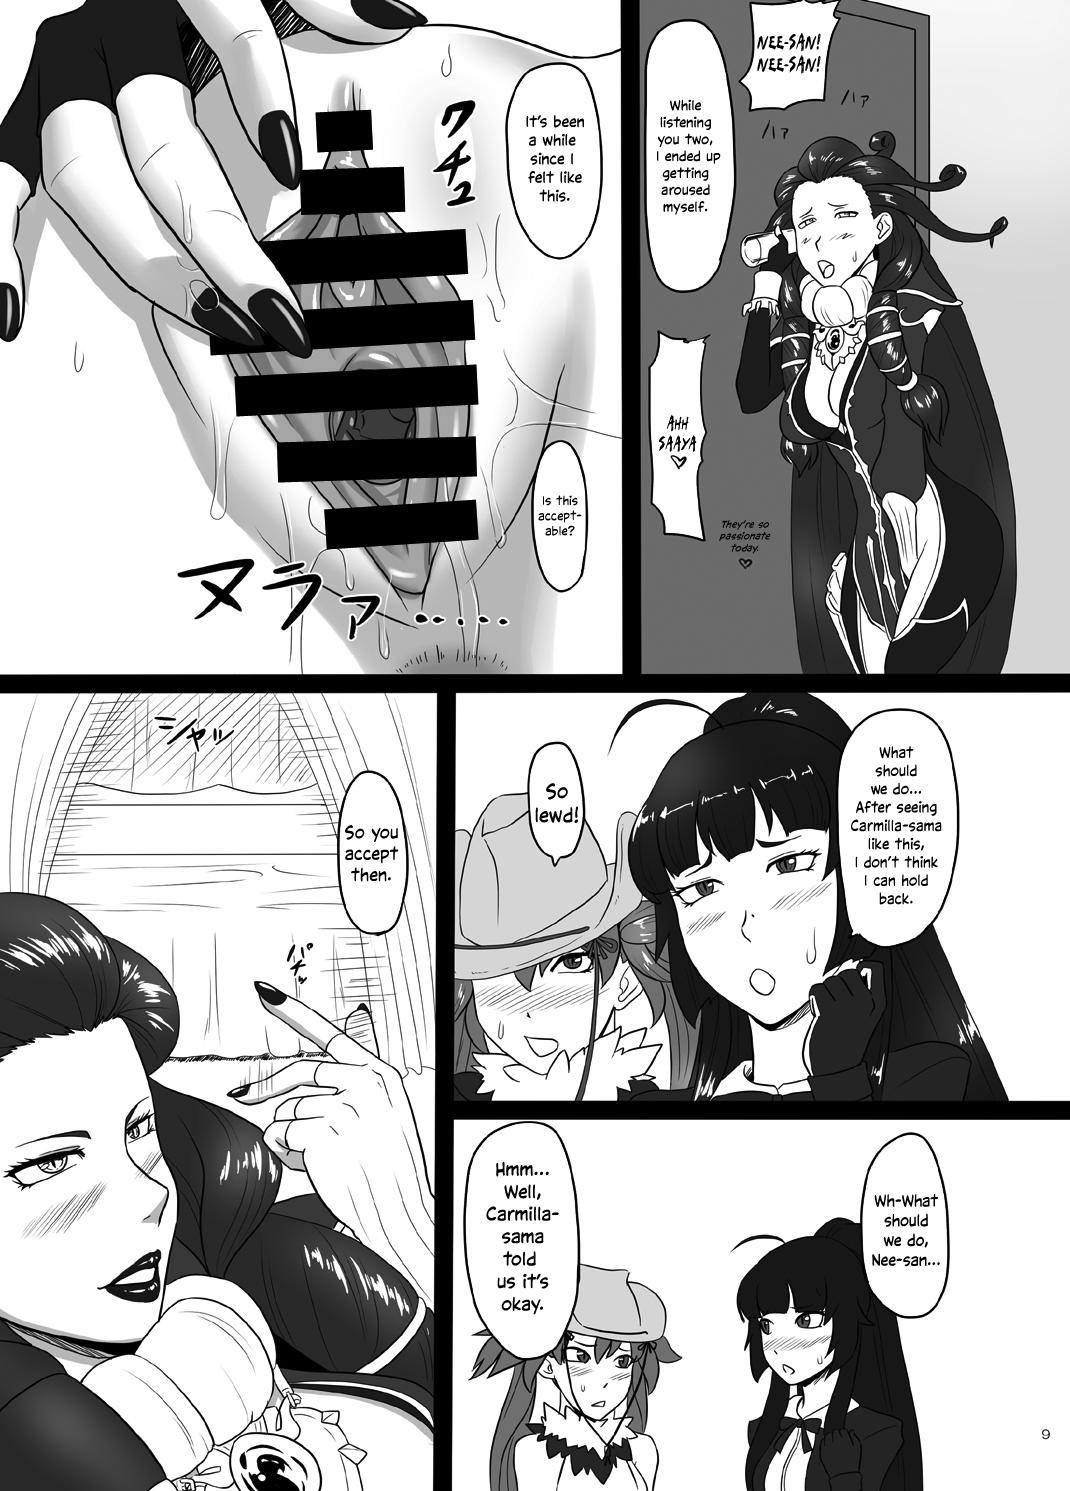 Beurette RenZetsu no Shimai 3 - The onechanbara Boob - Page 9